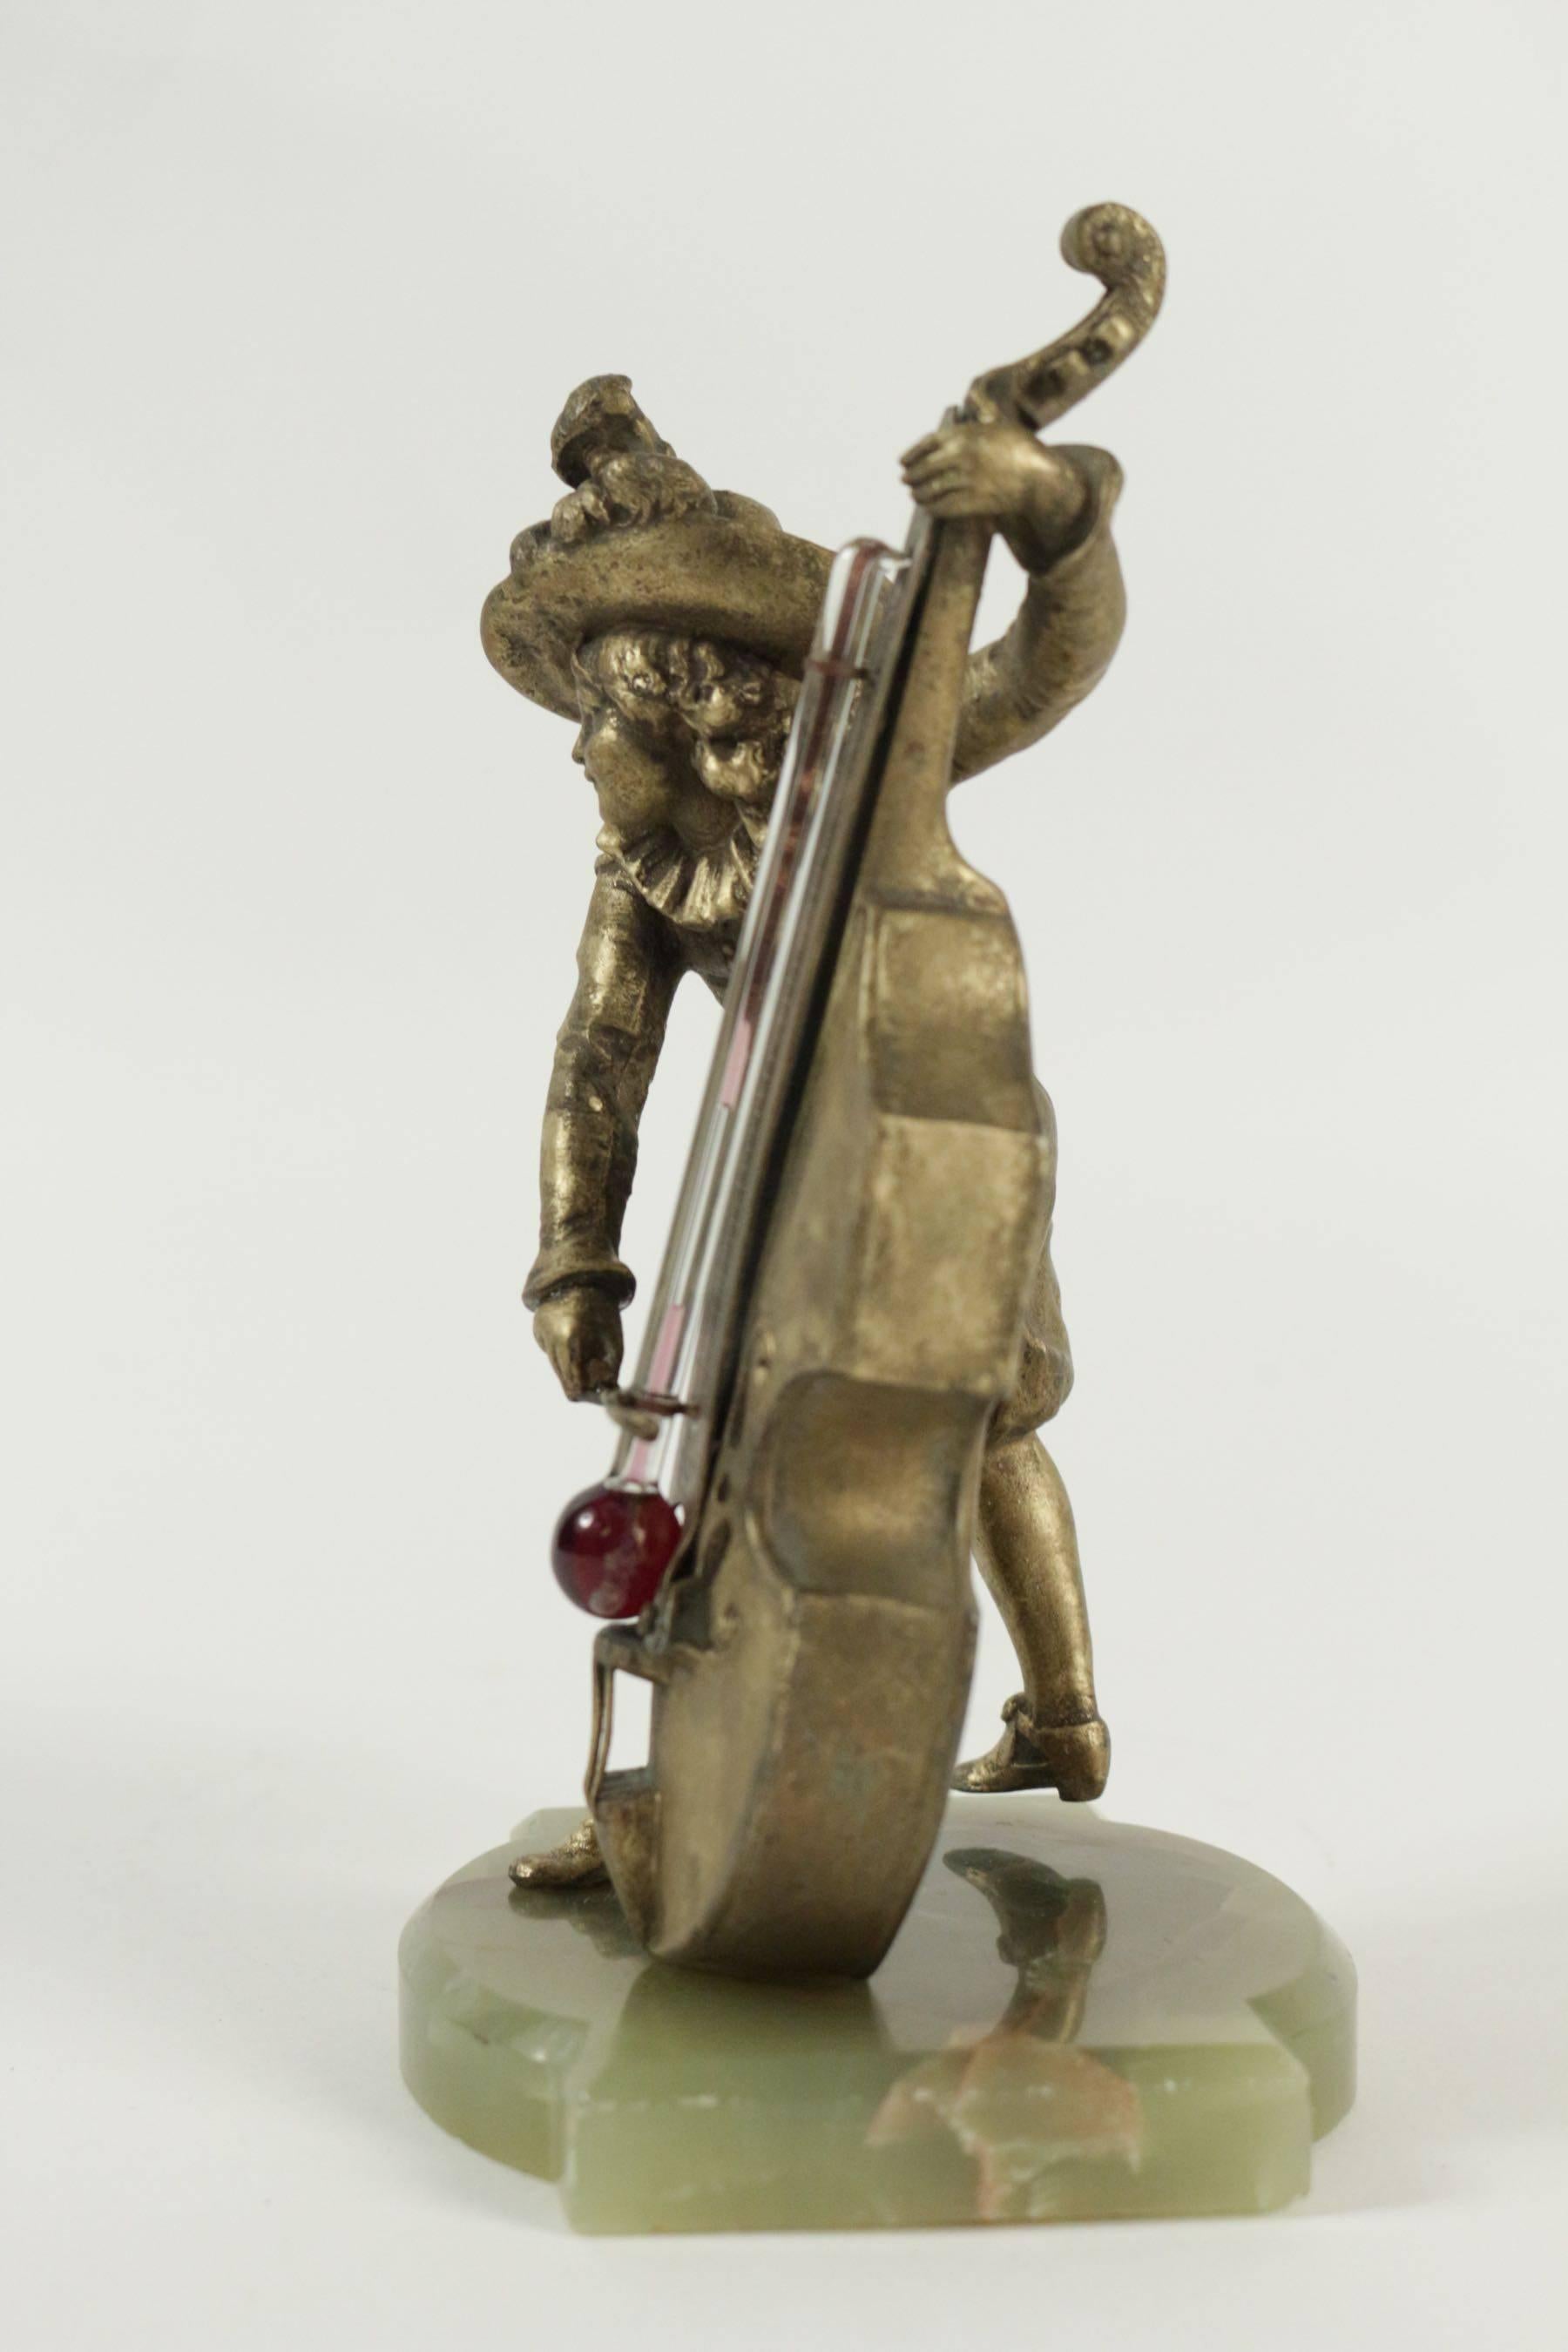 Barometer reguliert und Basis in Halbedelstein, der einen Cello-Spieler in antikem darstellt. 
Maße: H 20cm, B 10cm.